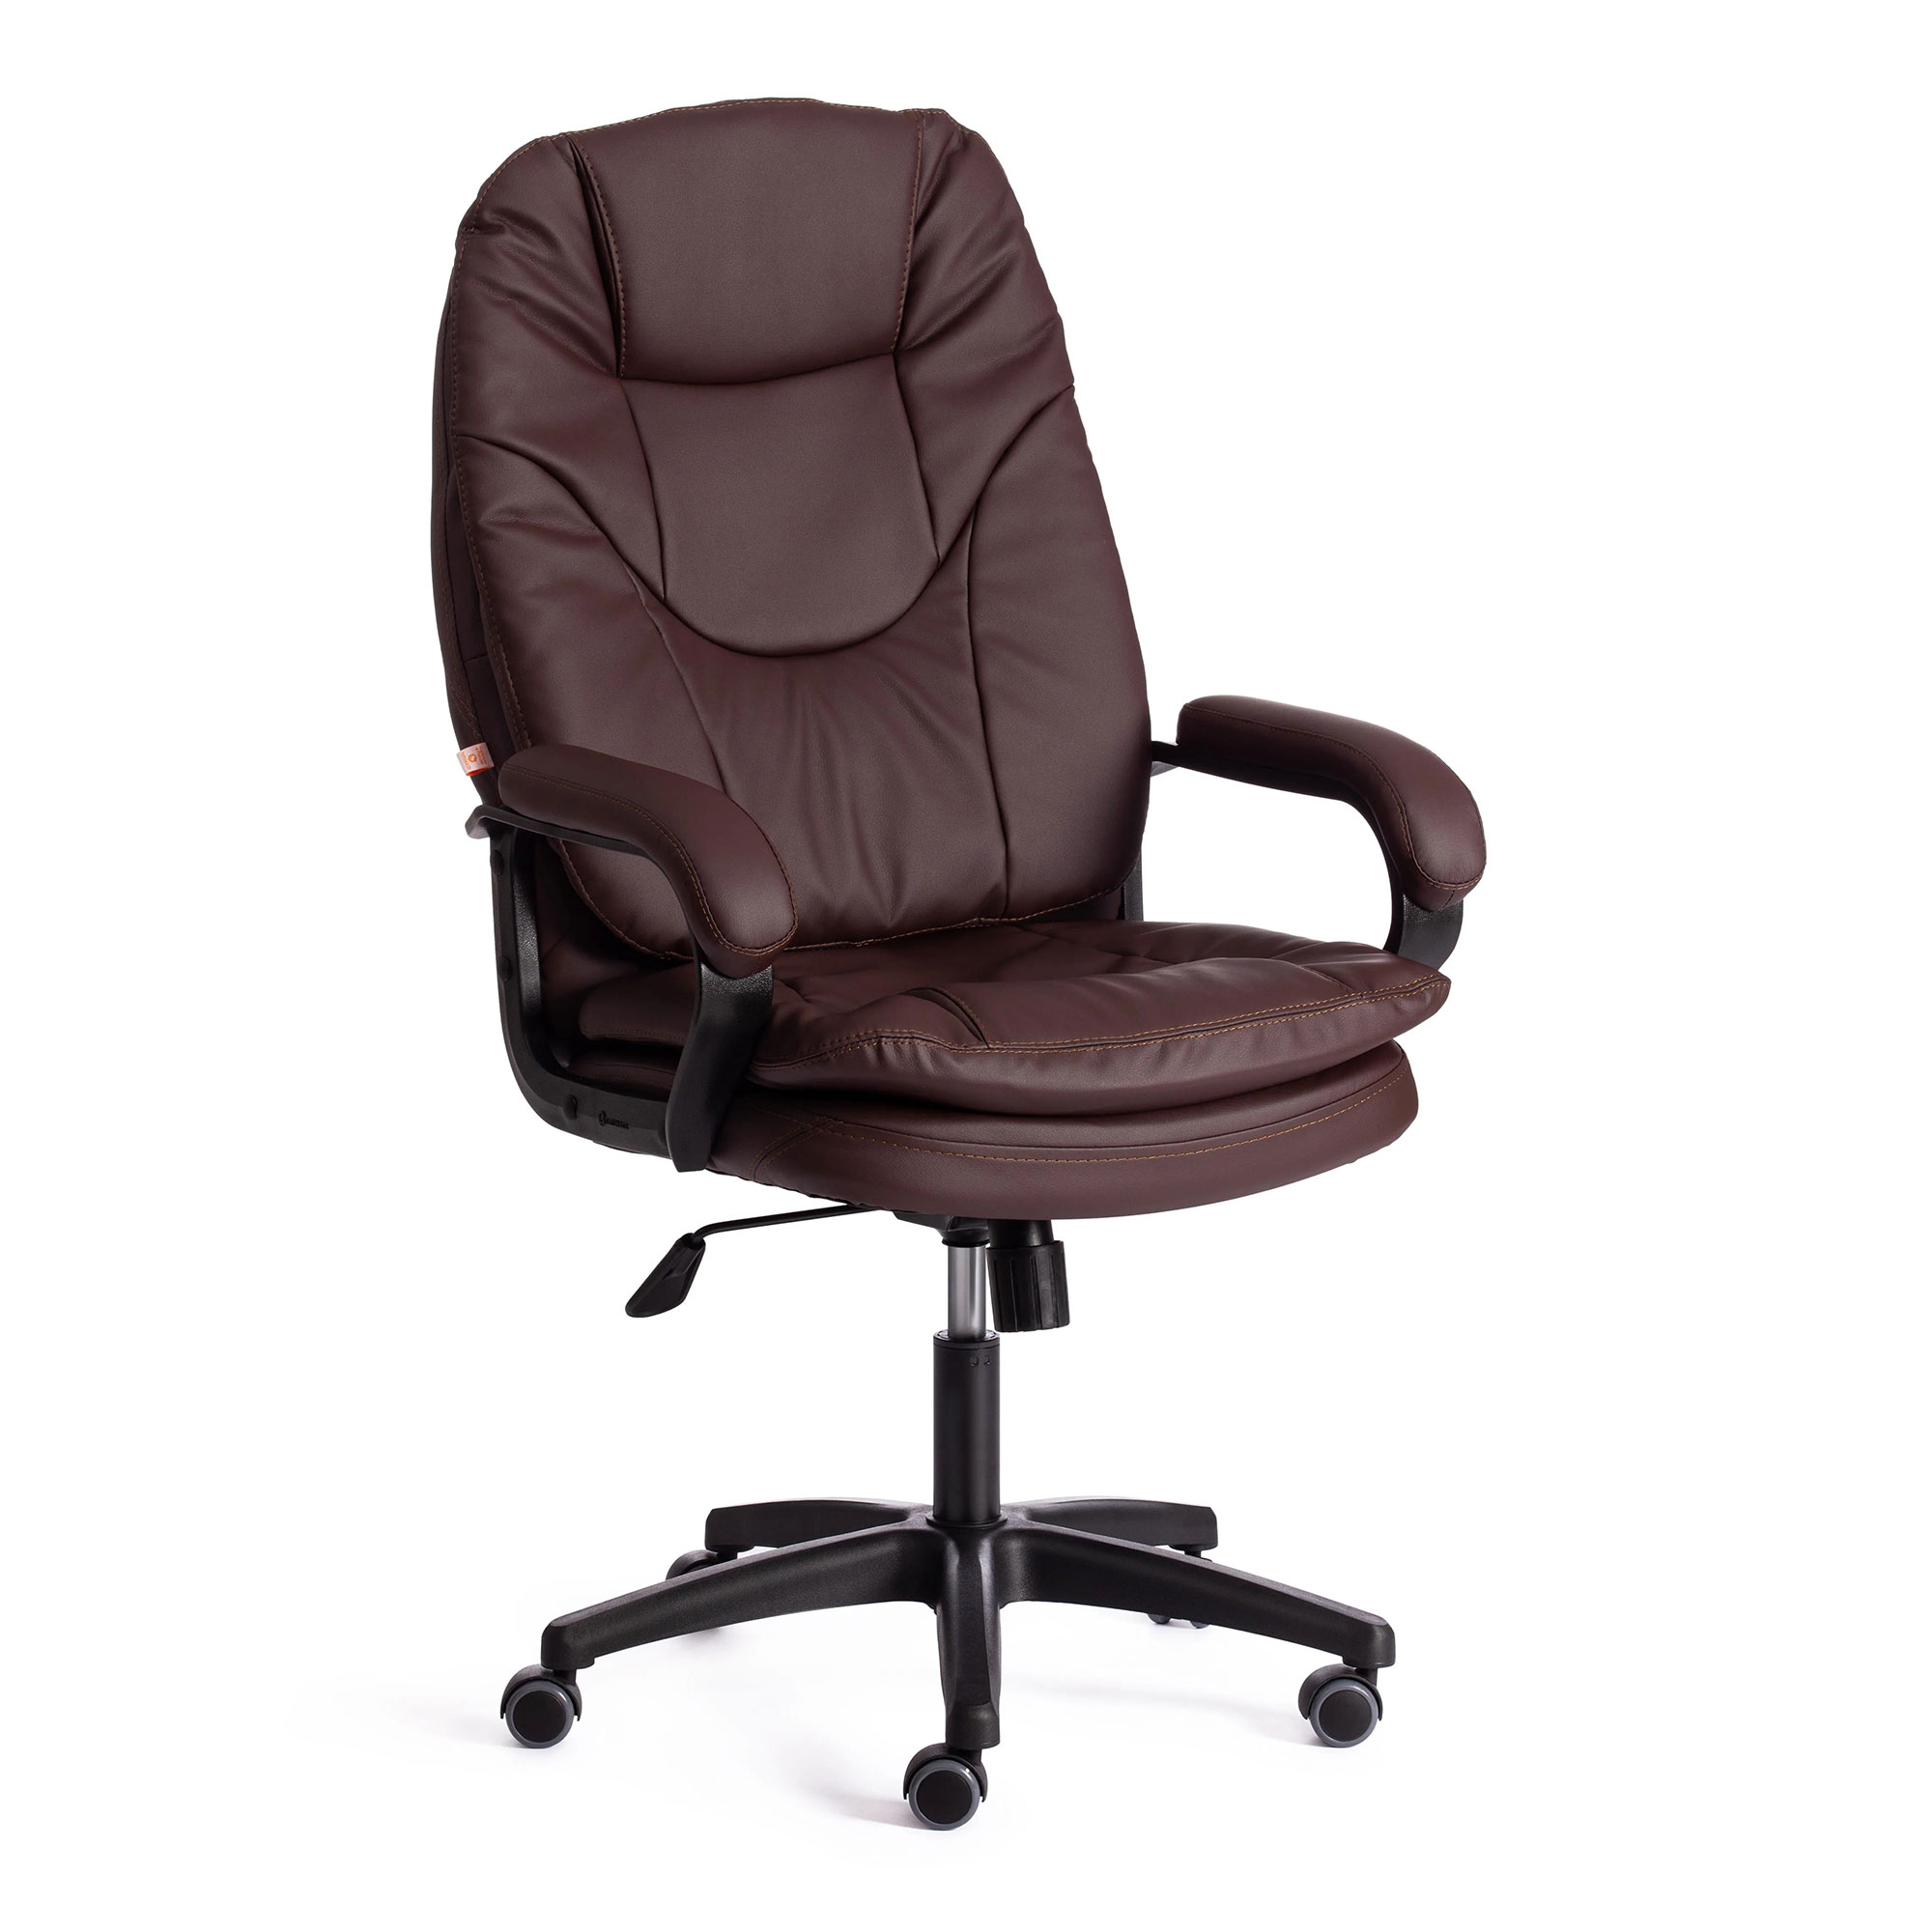 Компьютерное кресло TC Comfort коричневое 66х46х133 см (19381) кресло dreambag comfort красное экокожа 150x90 см